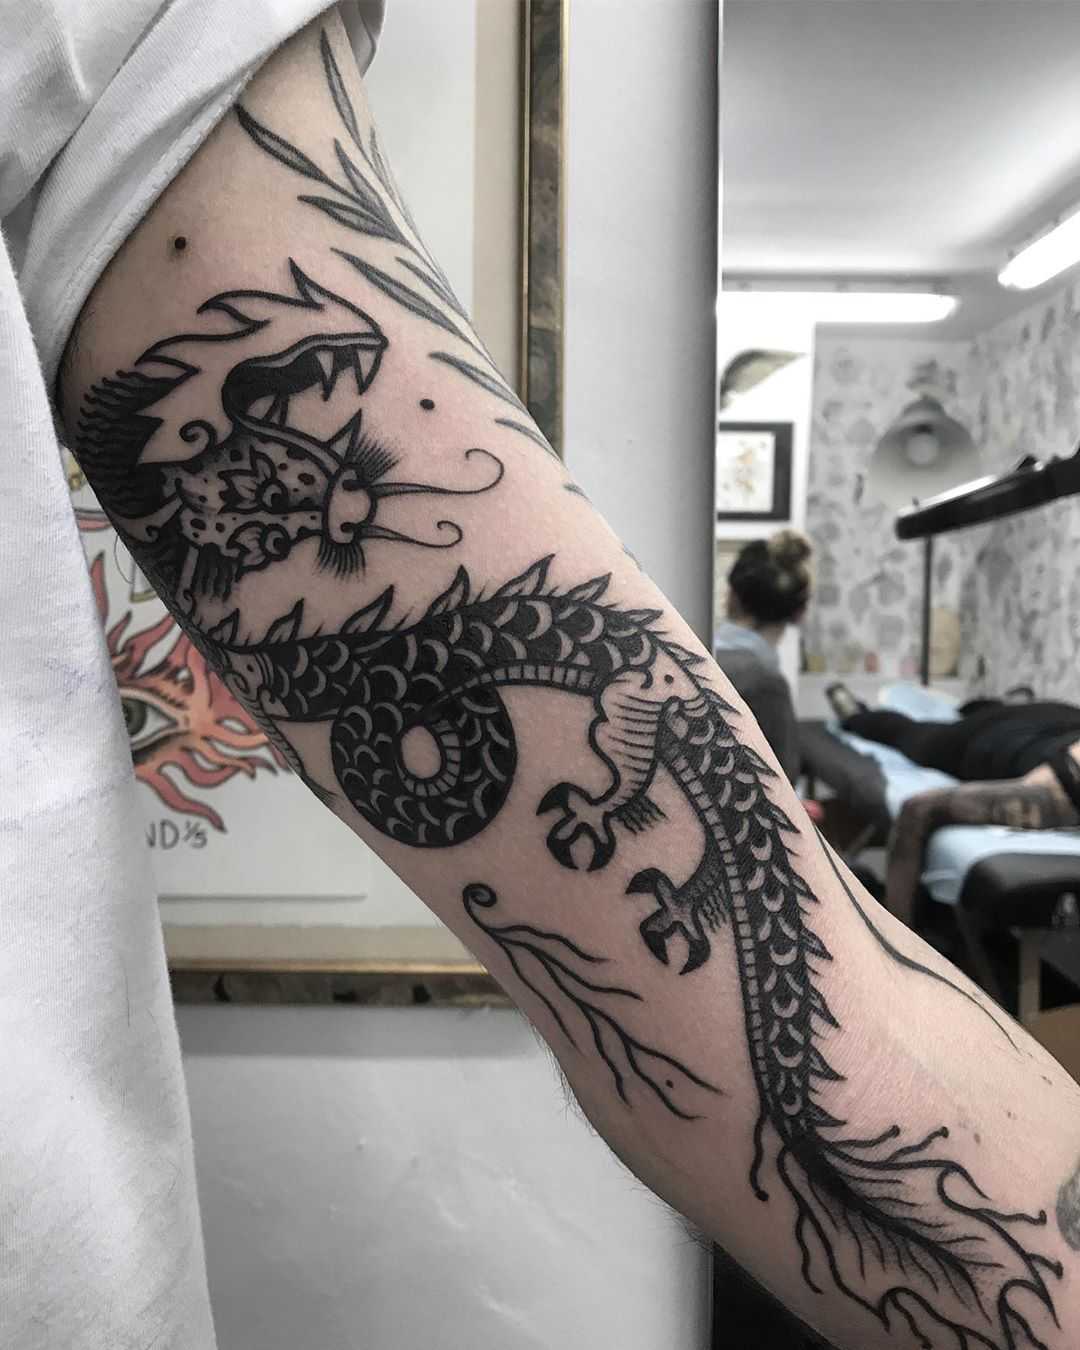 Cool black dragon tattoo